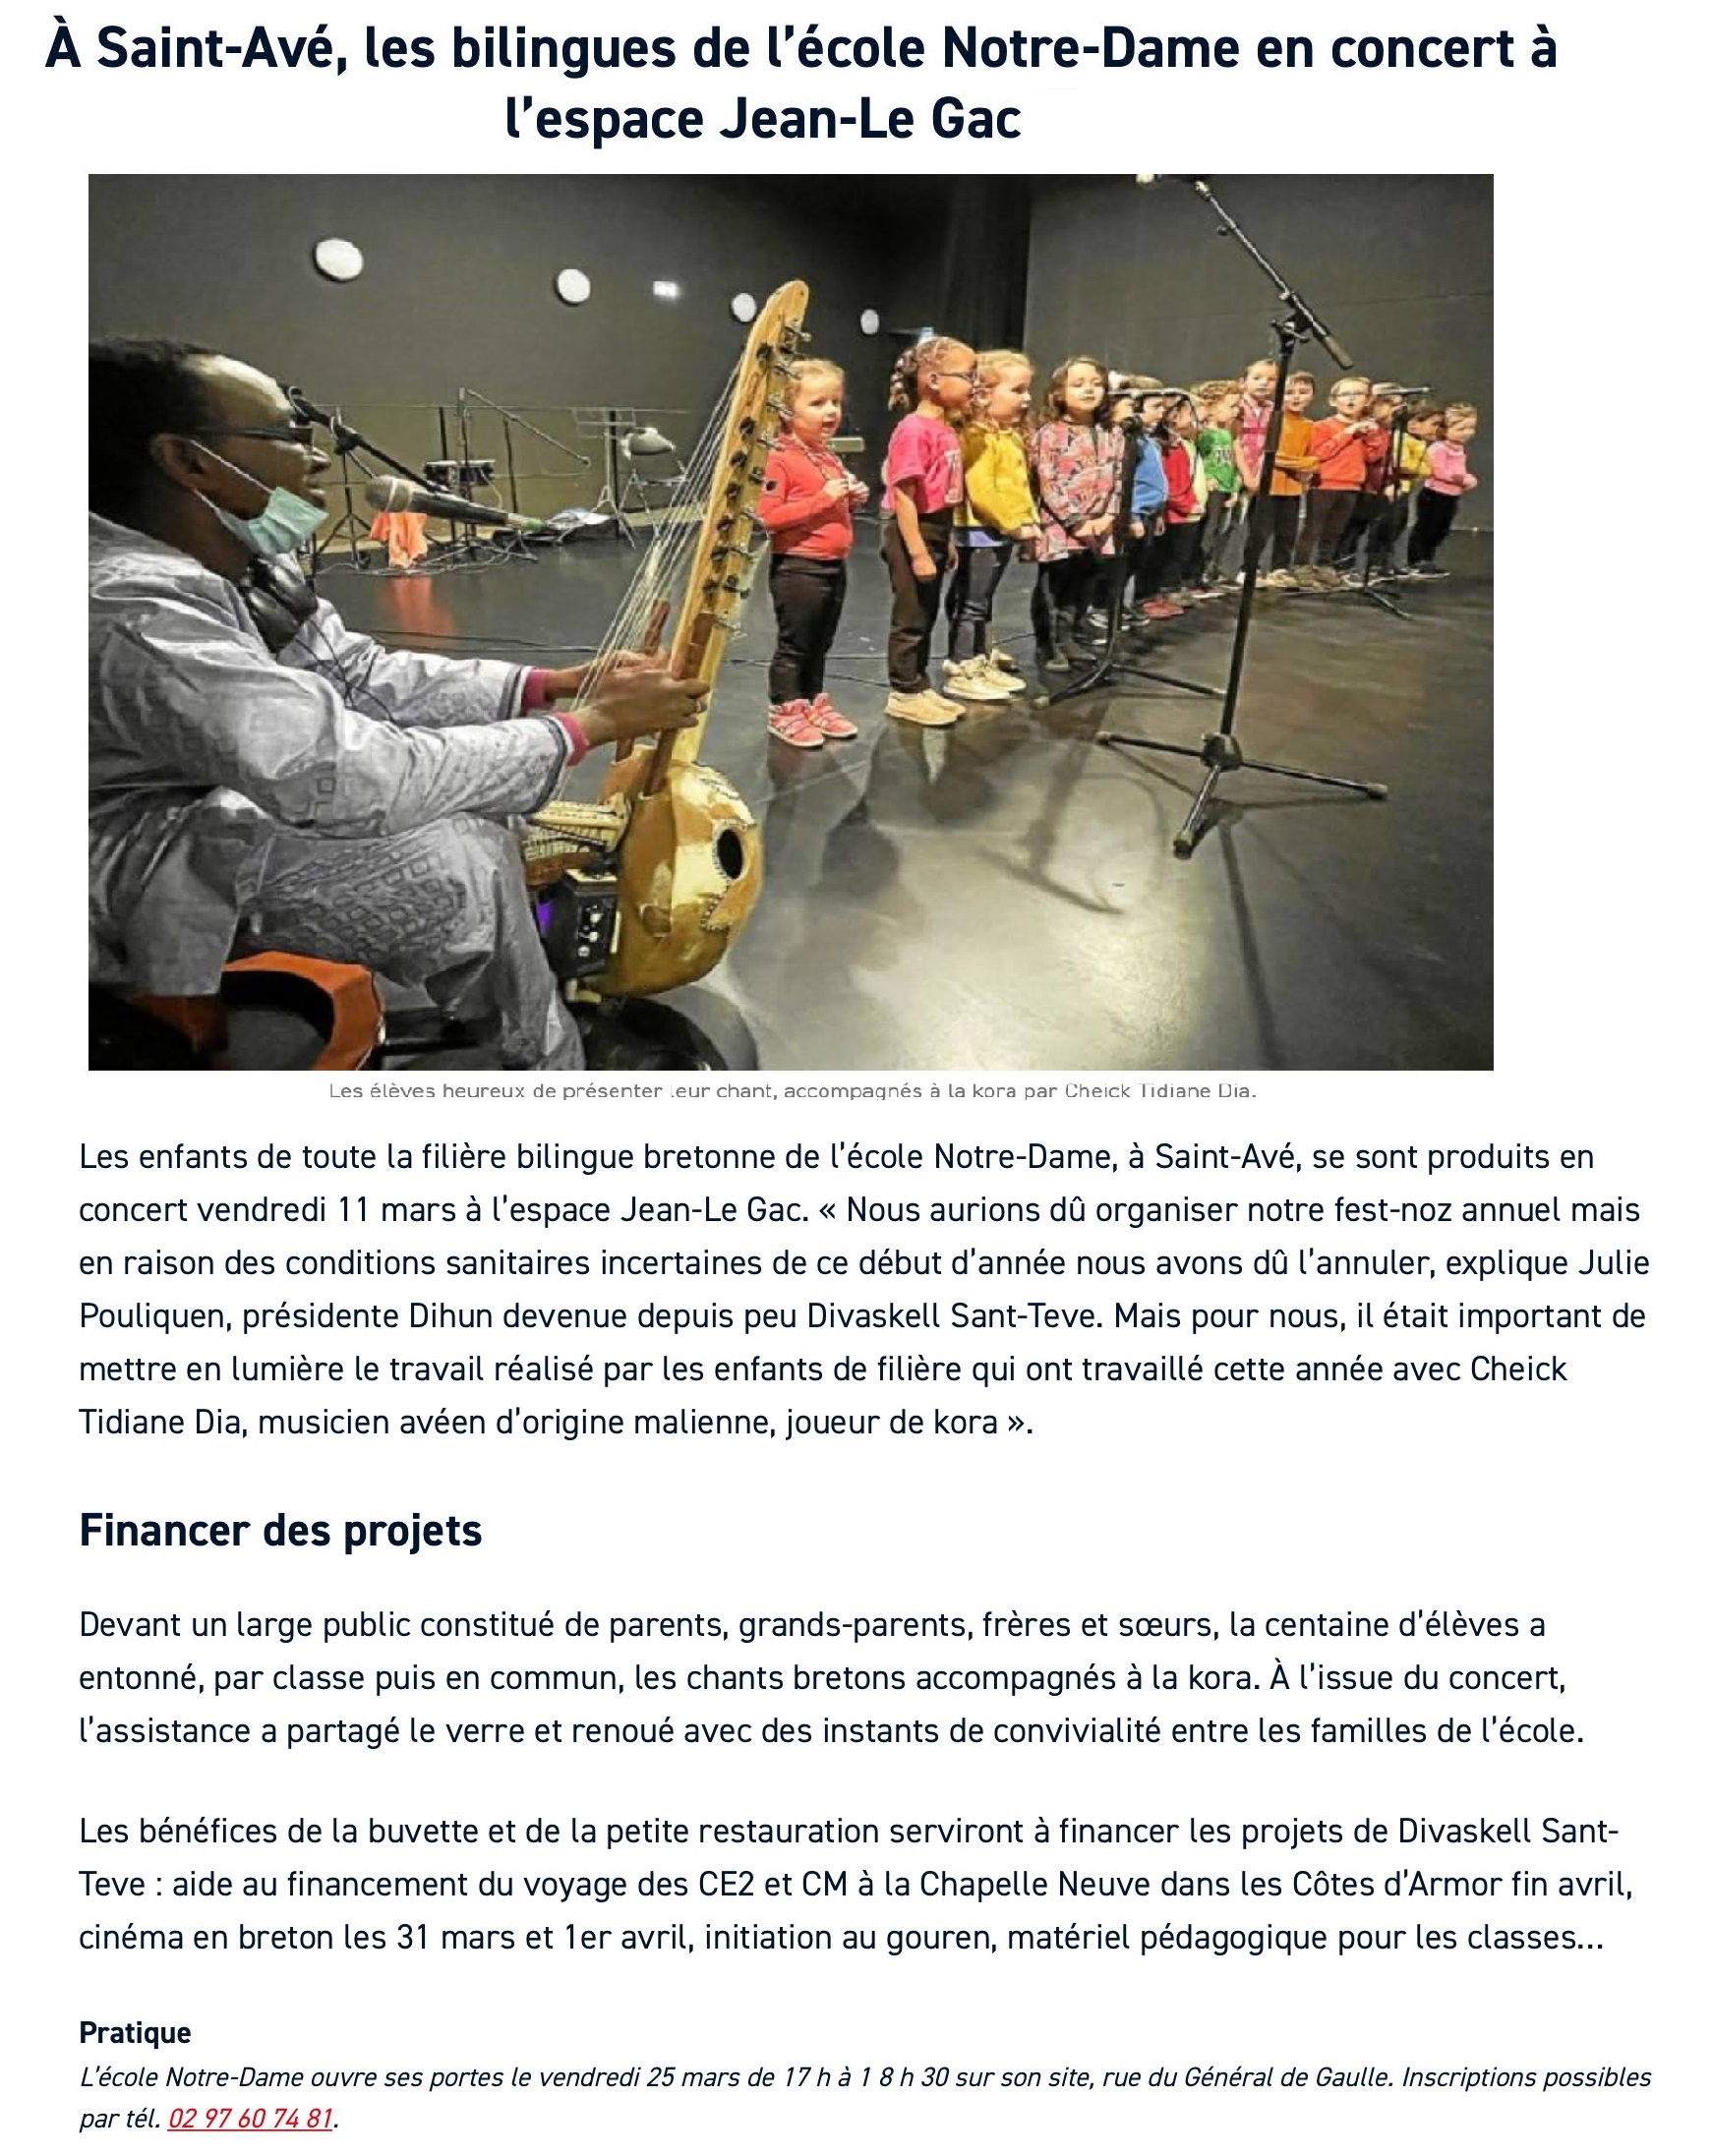 Les bilingues de l'école Notre-Dame en concert à l'espace Jean Le Gac